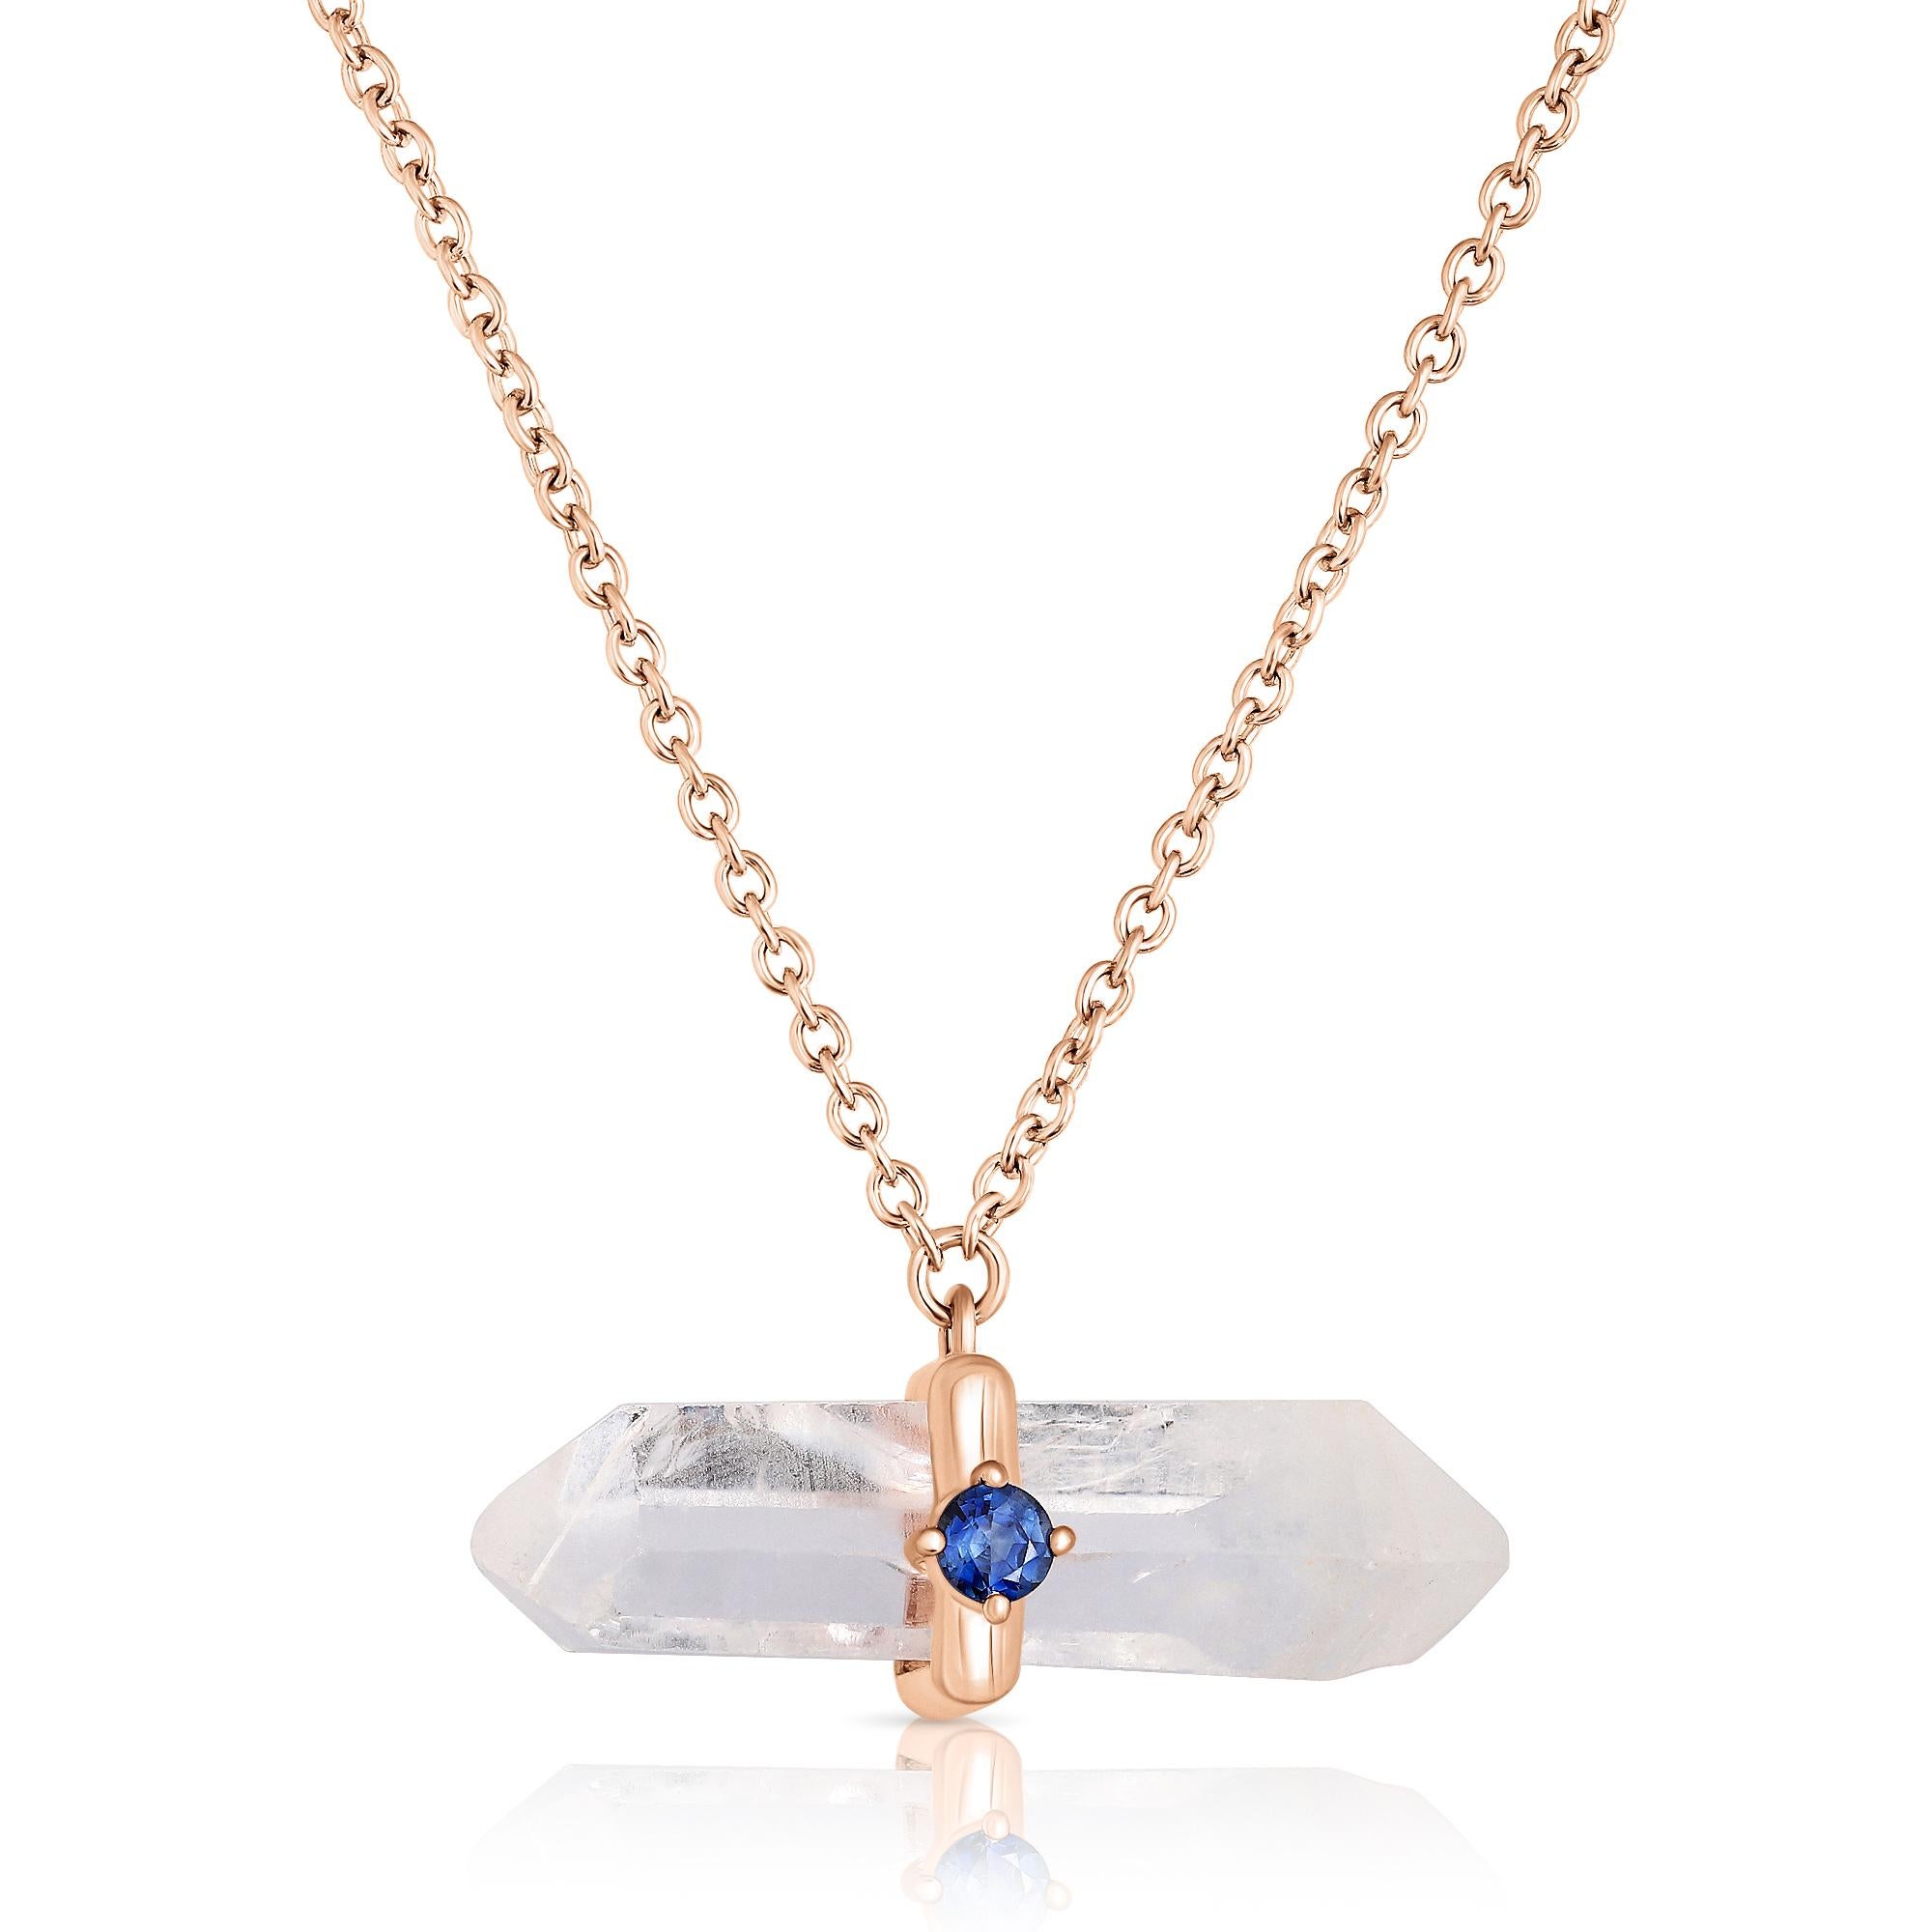 Modern 16.54 Carat Quartz Crystal Necklace For Sale